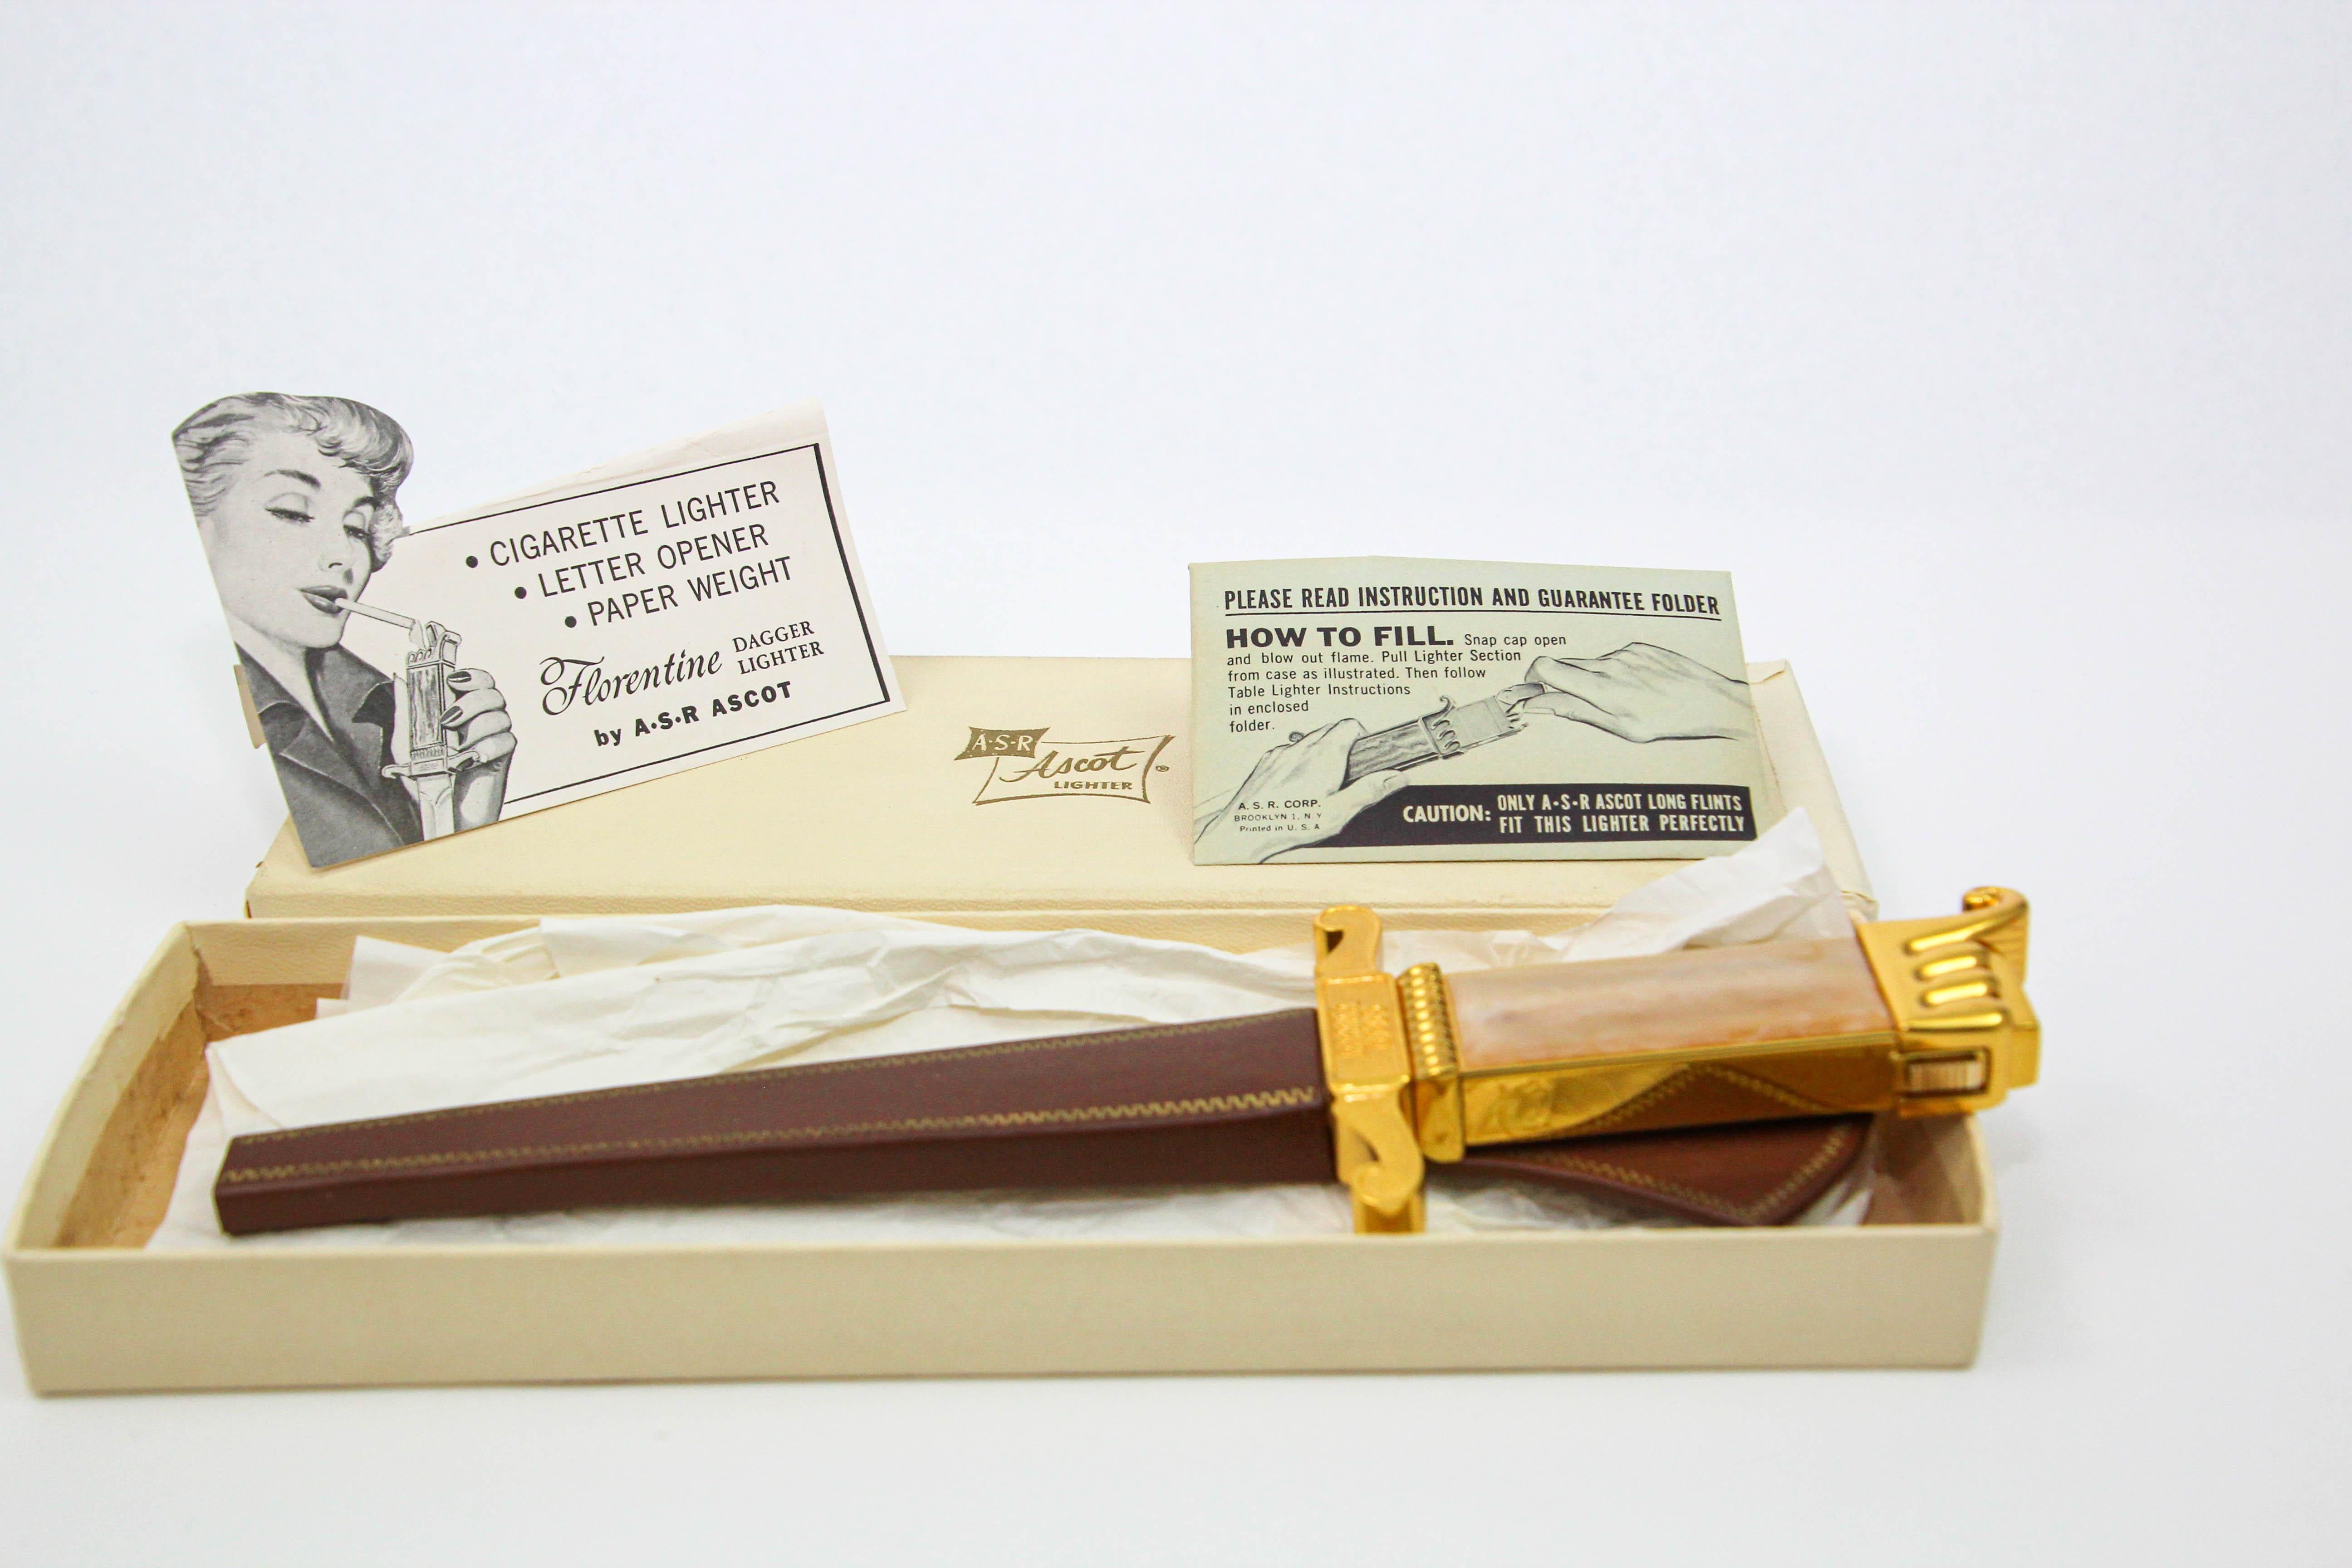 Ascot Florentine Dagger Feuerzeug Brieföffner Briefbeschwerer.
Dies ist ein sehr einzigartiges Feuerzeug Brieföffner kommt in Original-Box und Scheide.
Amerika, 1952, hergestellt von der American Safety Razor Co.
Vintage Dagger-Form Brieföffner mit